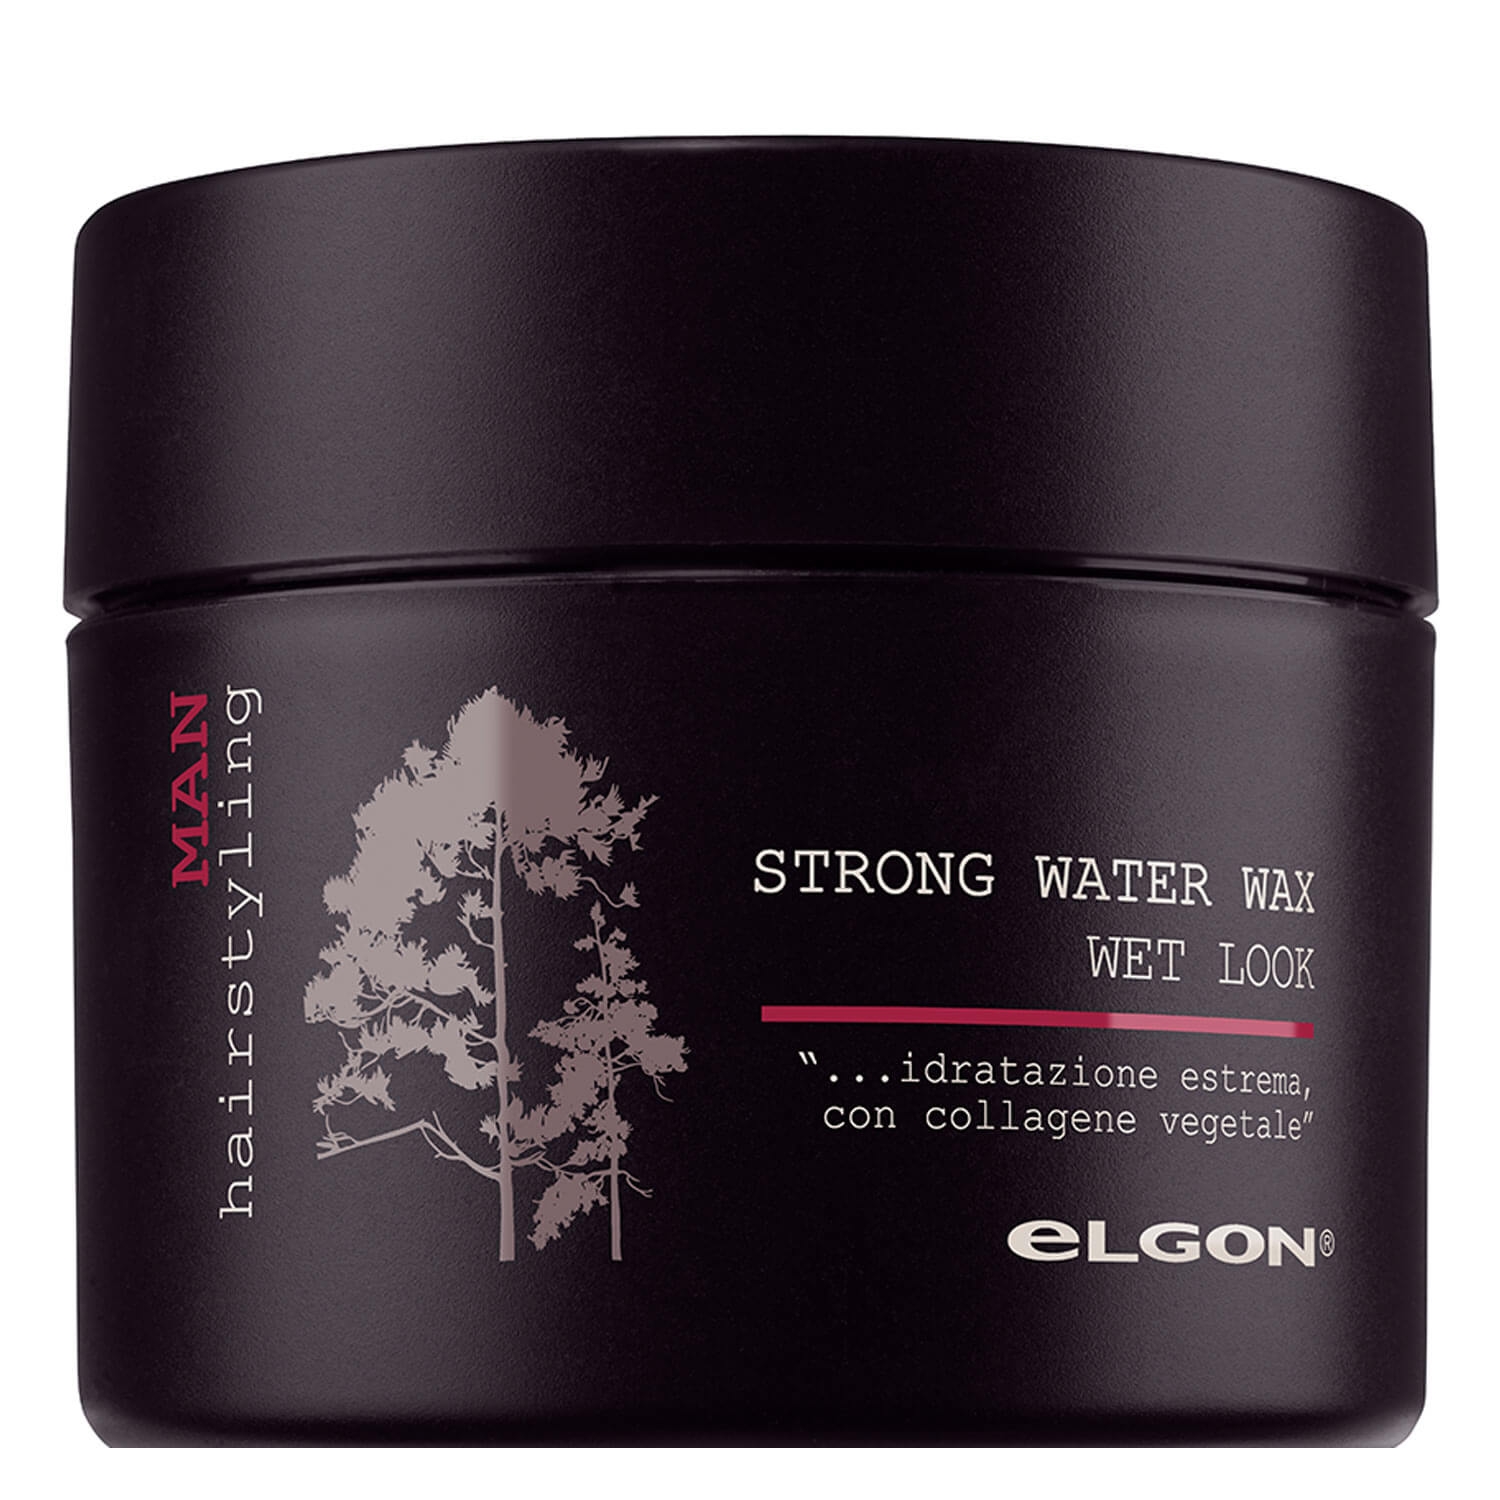 Produktbild von Elgon for Men - Strong Water Wax